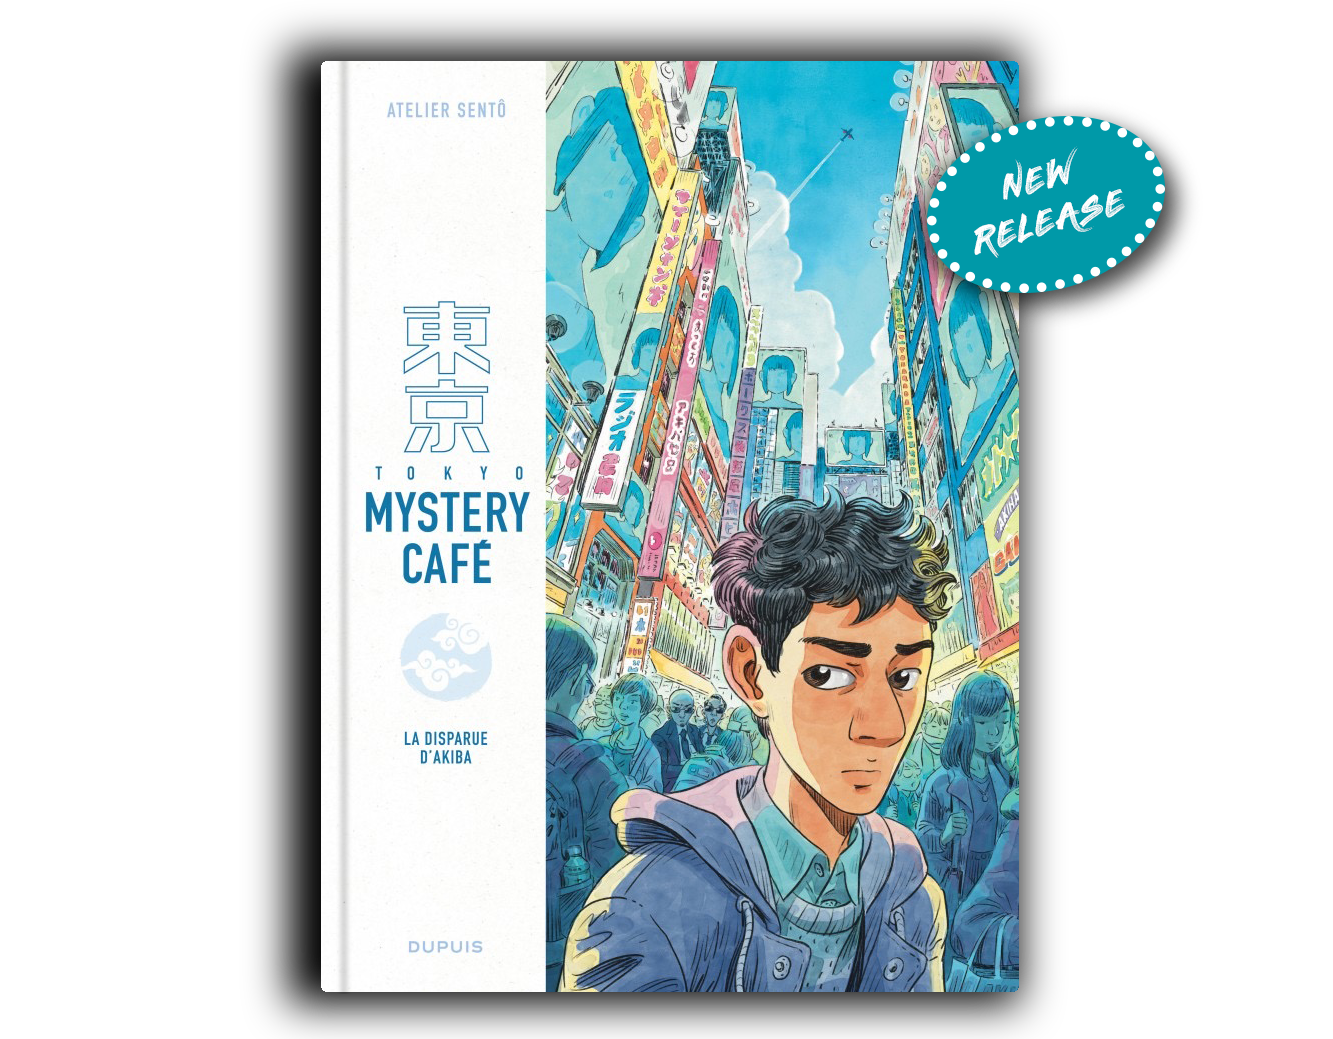 Tokyo Mystery café comic book cover